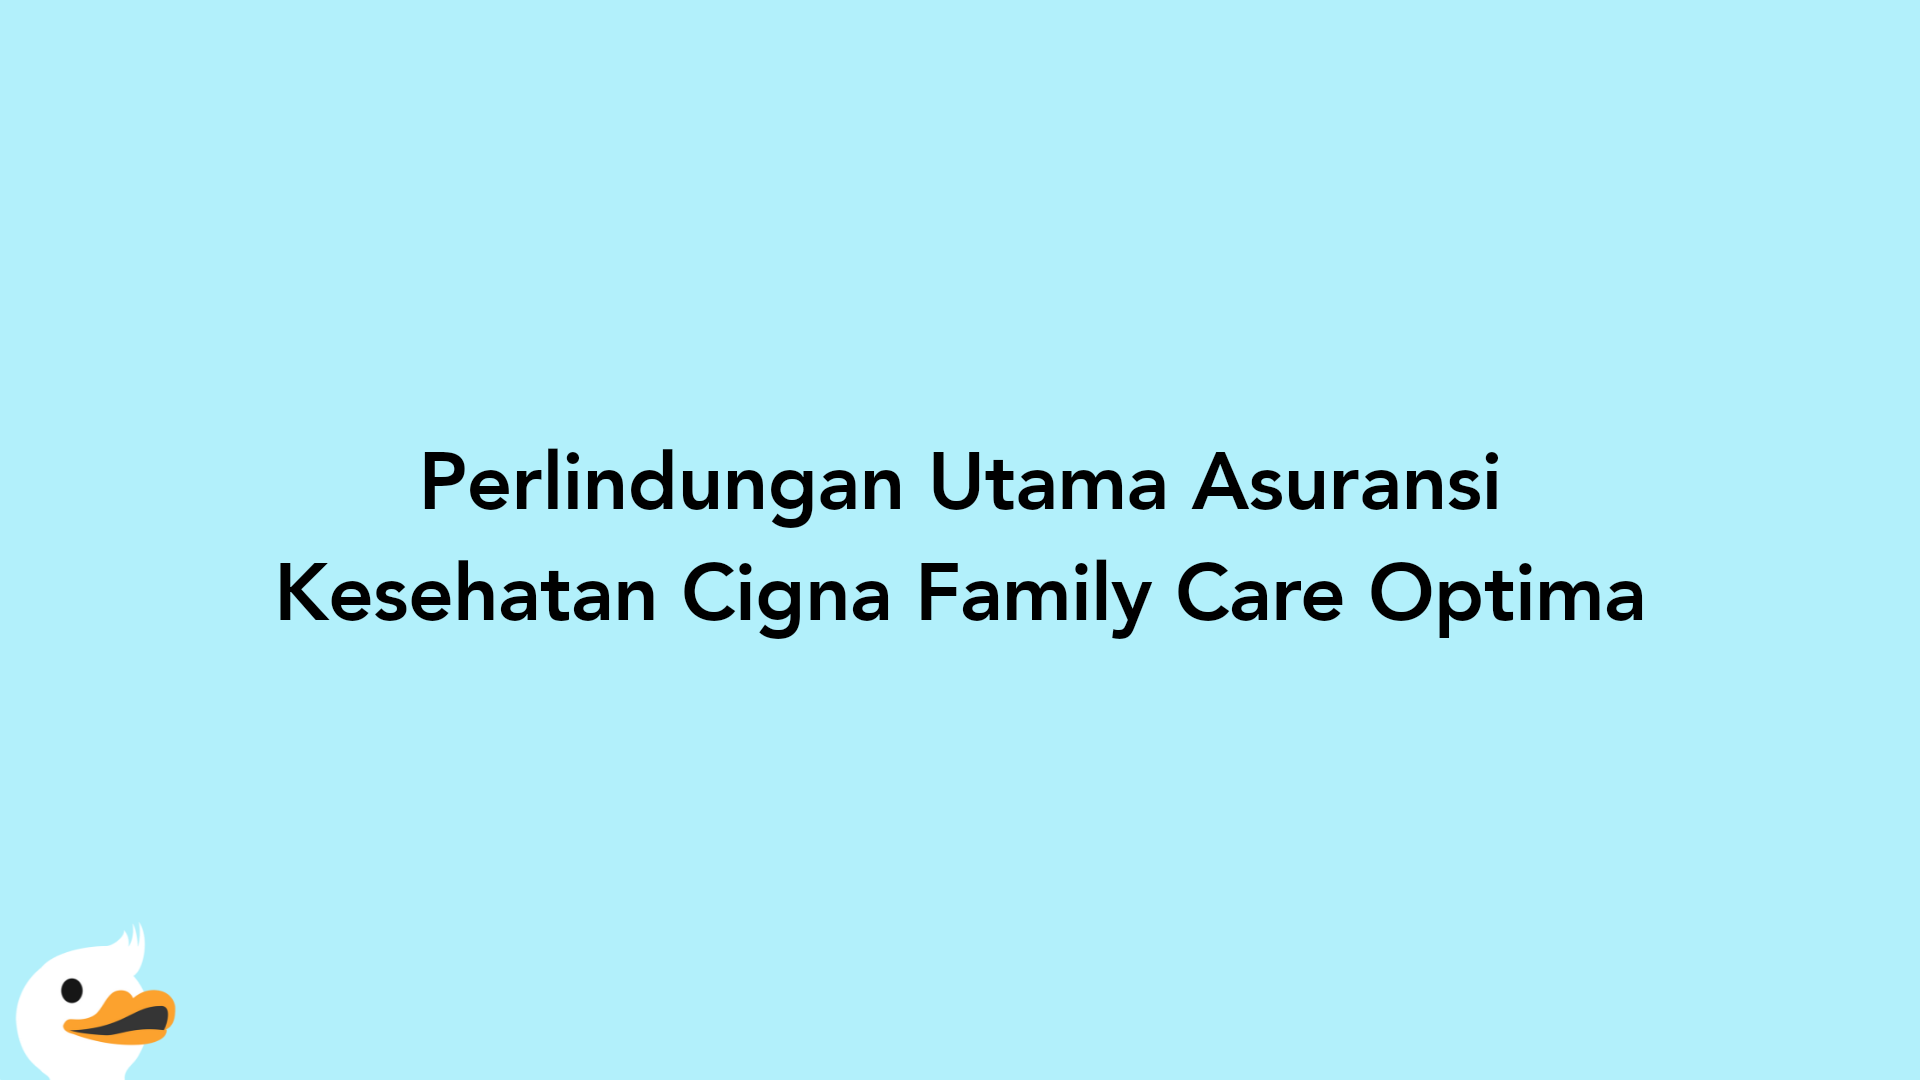 Perlindungan Utama Asuransi Kesehatan Cigna Family Care Optima